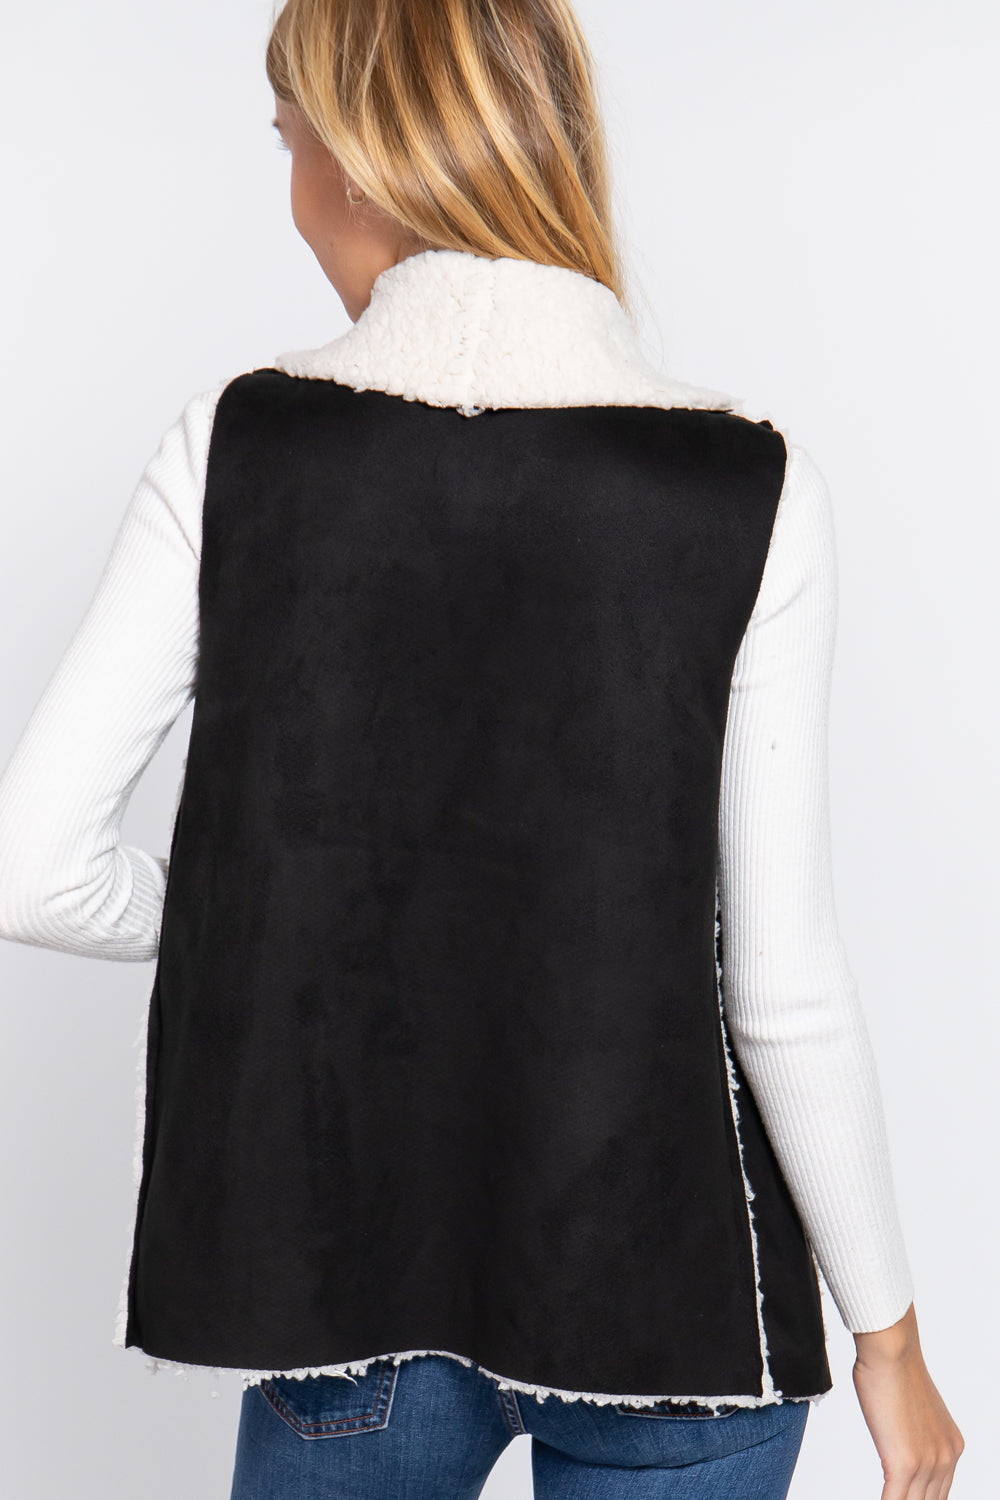 - Shawl Faux Suede Fur Bonded Vest - 3 colors - womens vest at TFC&H Co.